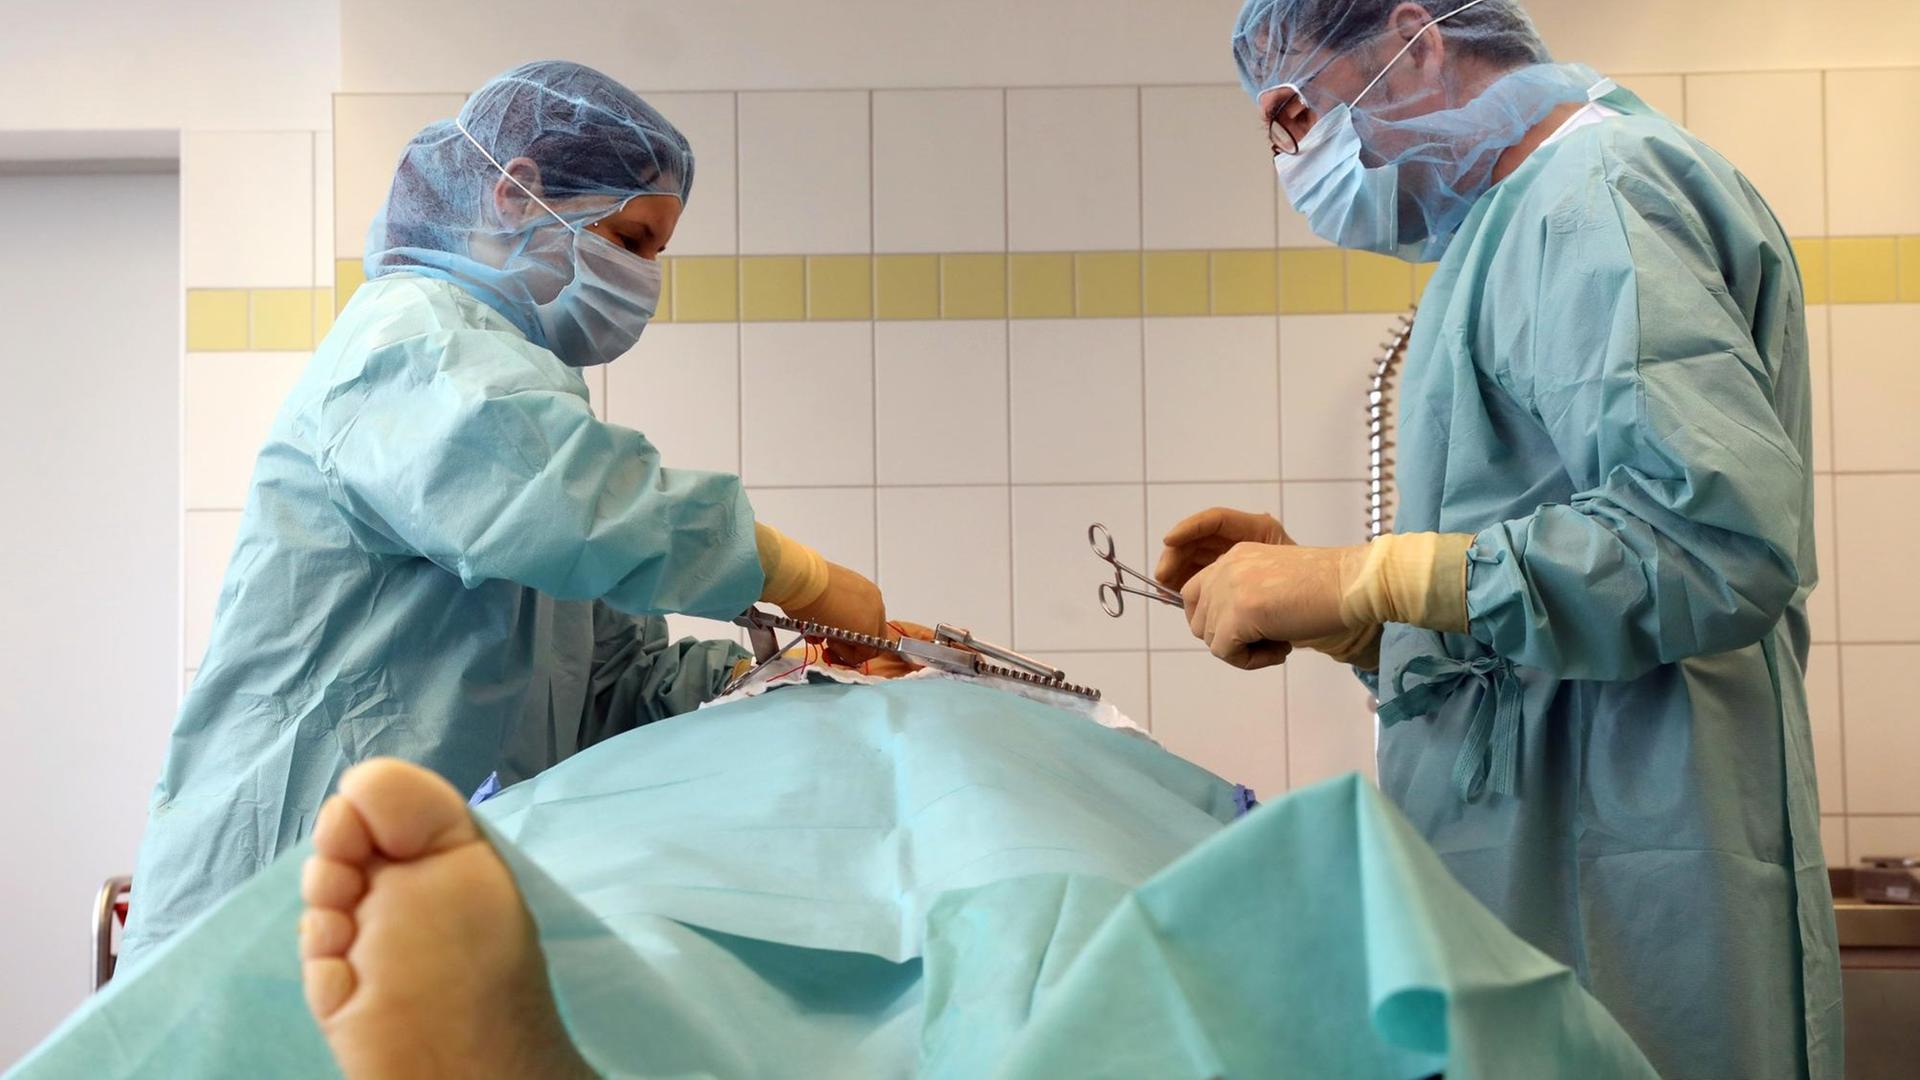 Das Foto zeigt einen Operations-Saal. In der Mitte liegt ein Mensch auf einem Tisch. Rechts und links stehen zwei Ärzte in grüner Kleidung. 